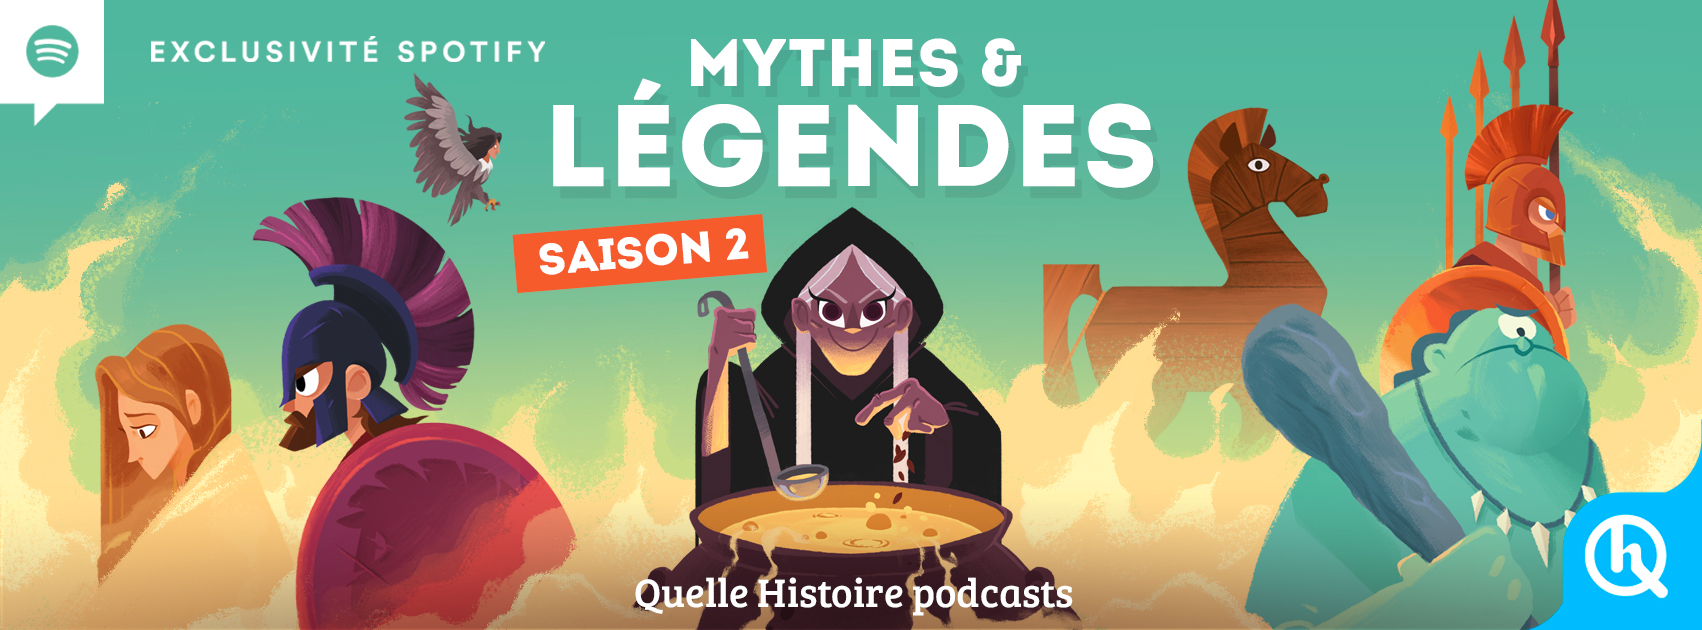 La série audio à succès "Mythes & Légendes" diffusée gratuitement sur Spotify